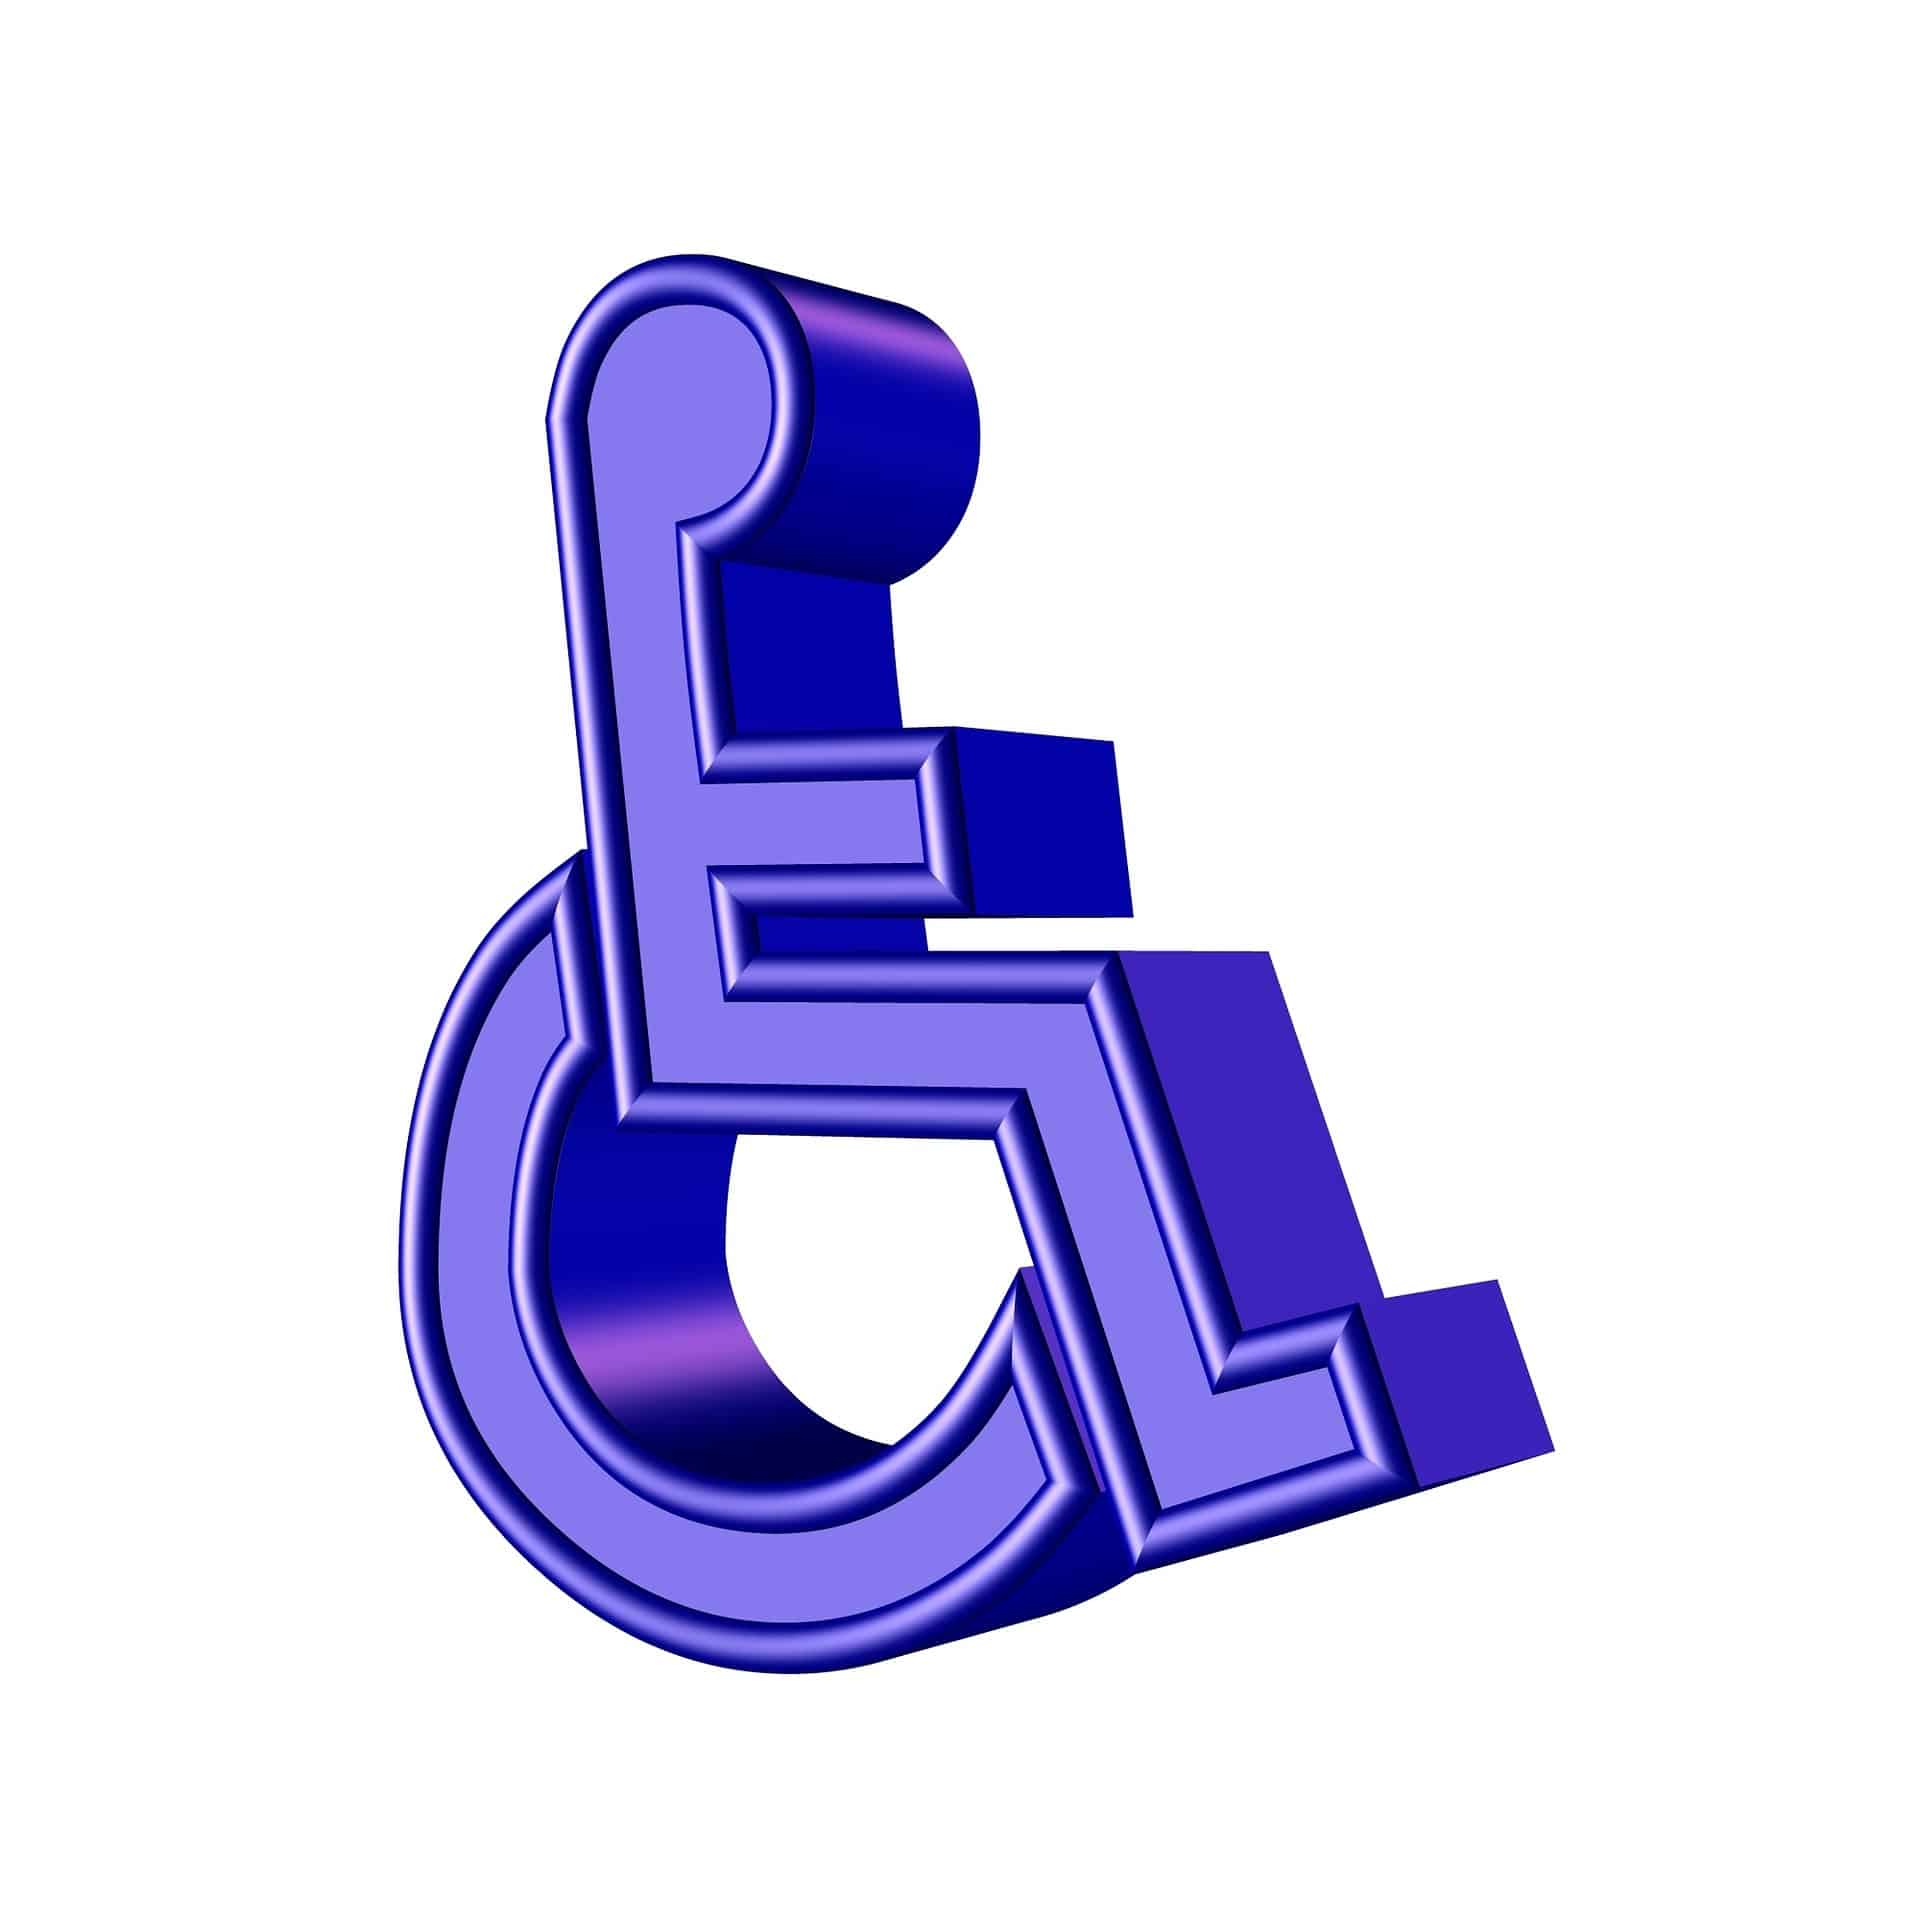 Διακρίσεις στα άτομα με αναπηρία ακόμη και για το εφάπαξ βοήθημα των 200 ευρώ / ΕΣΑμεΑ